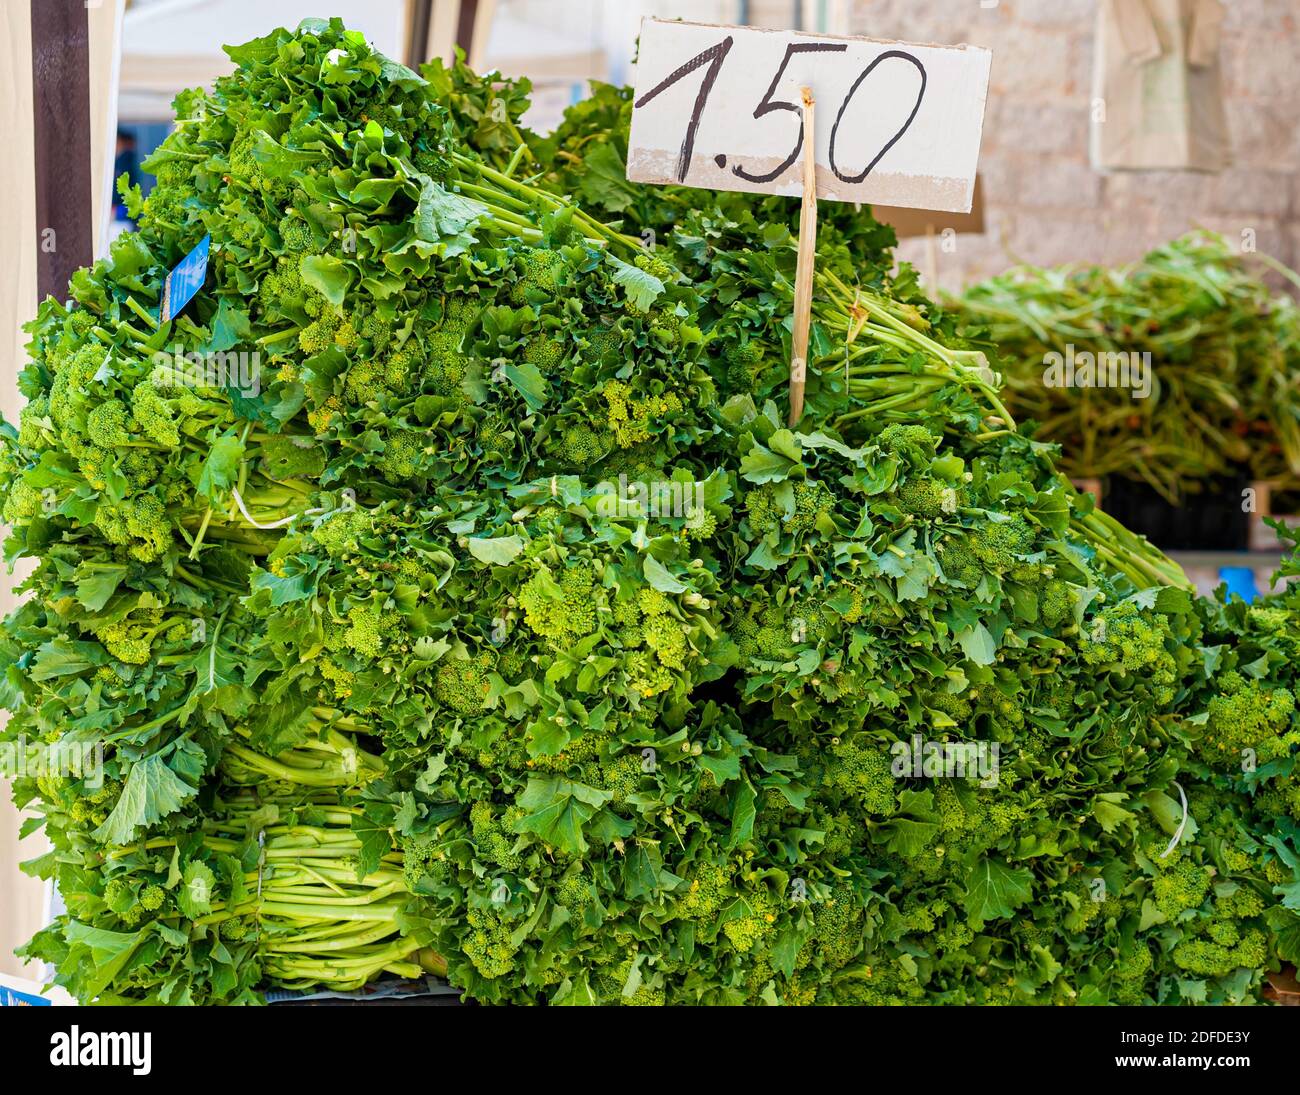 Detalle Cime di Rapa (Brassica rapa sylvestris): Verduras tradicionales italianas de Puglia. Verde fresco en venta en ? 1.50 por kg en un mercado Foto de stock